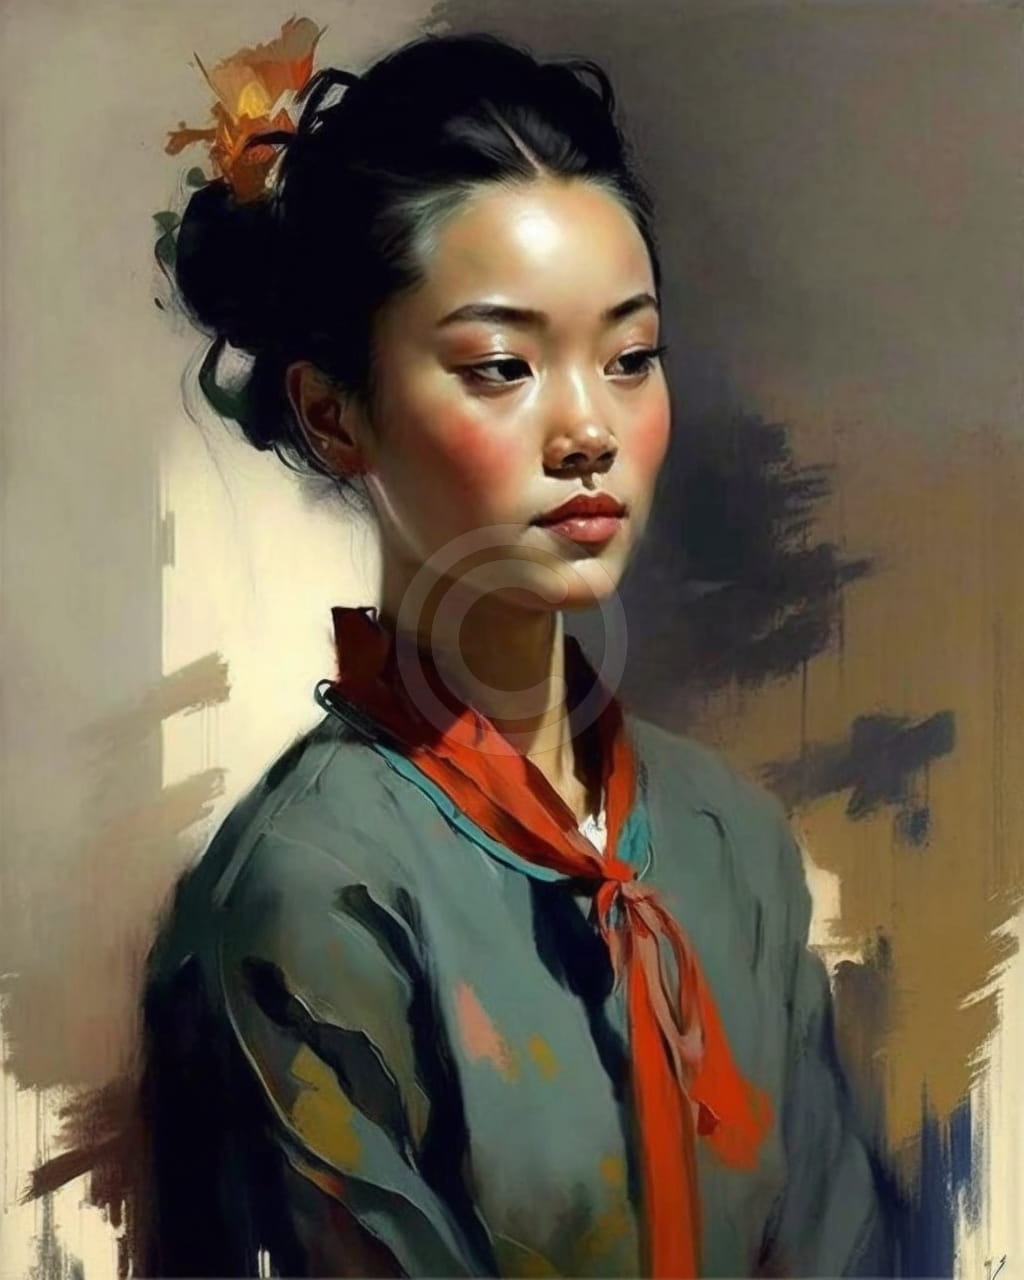 Asian Woman Portrait